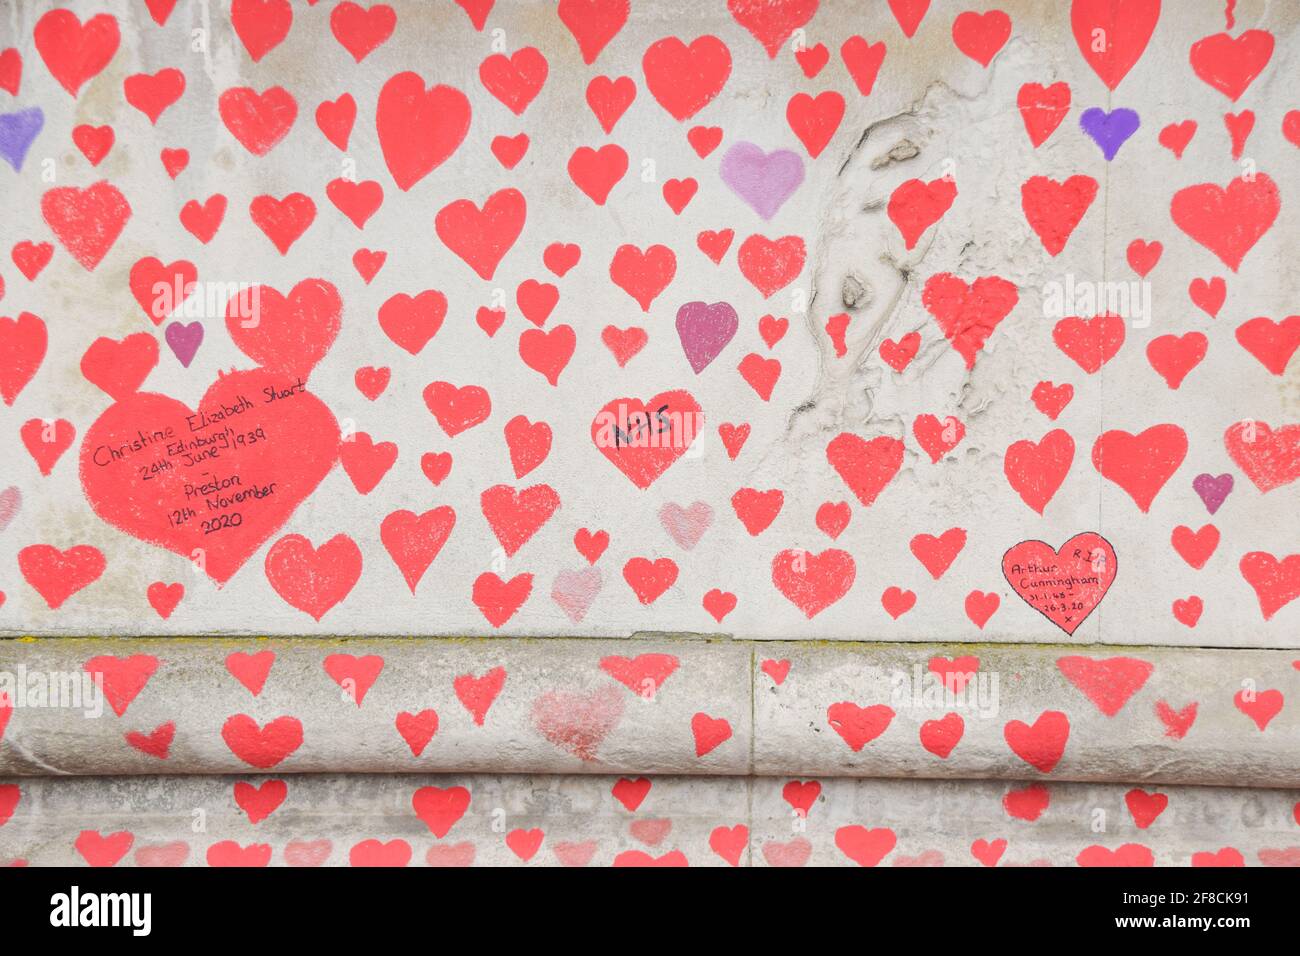 Londres, Reino Unido. 13th de abril de 2021. Corazones rojos en el National Covid Memorial Wall fuera del St Thomas' Hospital. 150.000 corazones rojos han sido pintados por voluntarios y miembros del público, uno por cada vida perdida a Covid en el Reino Unido hasta la fecha. Foto de stock